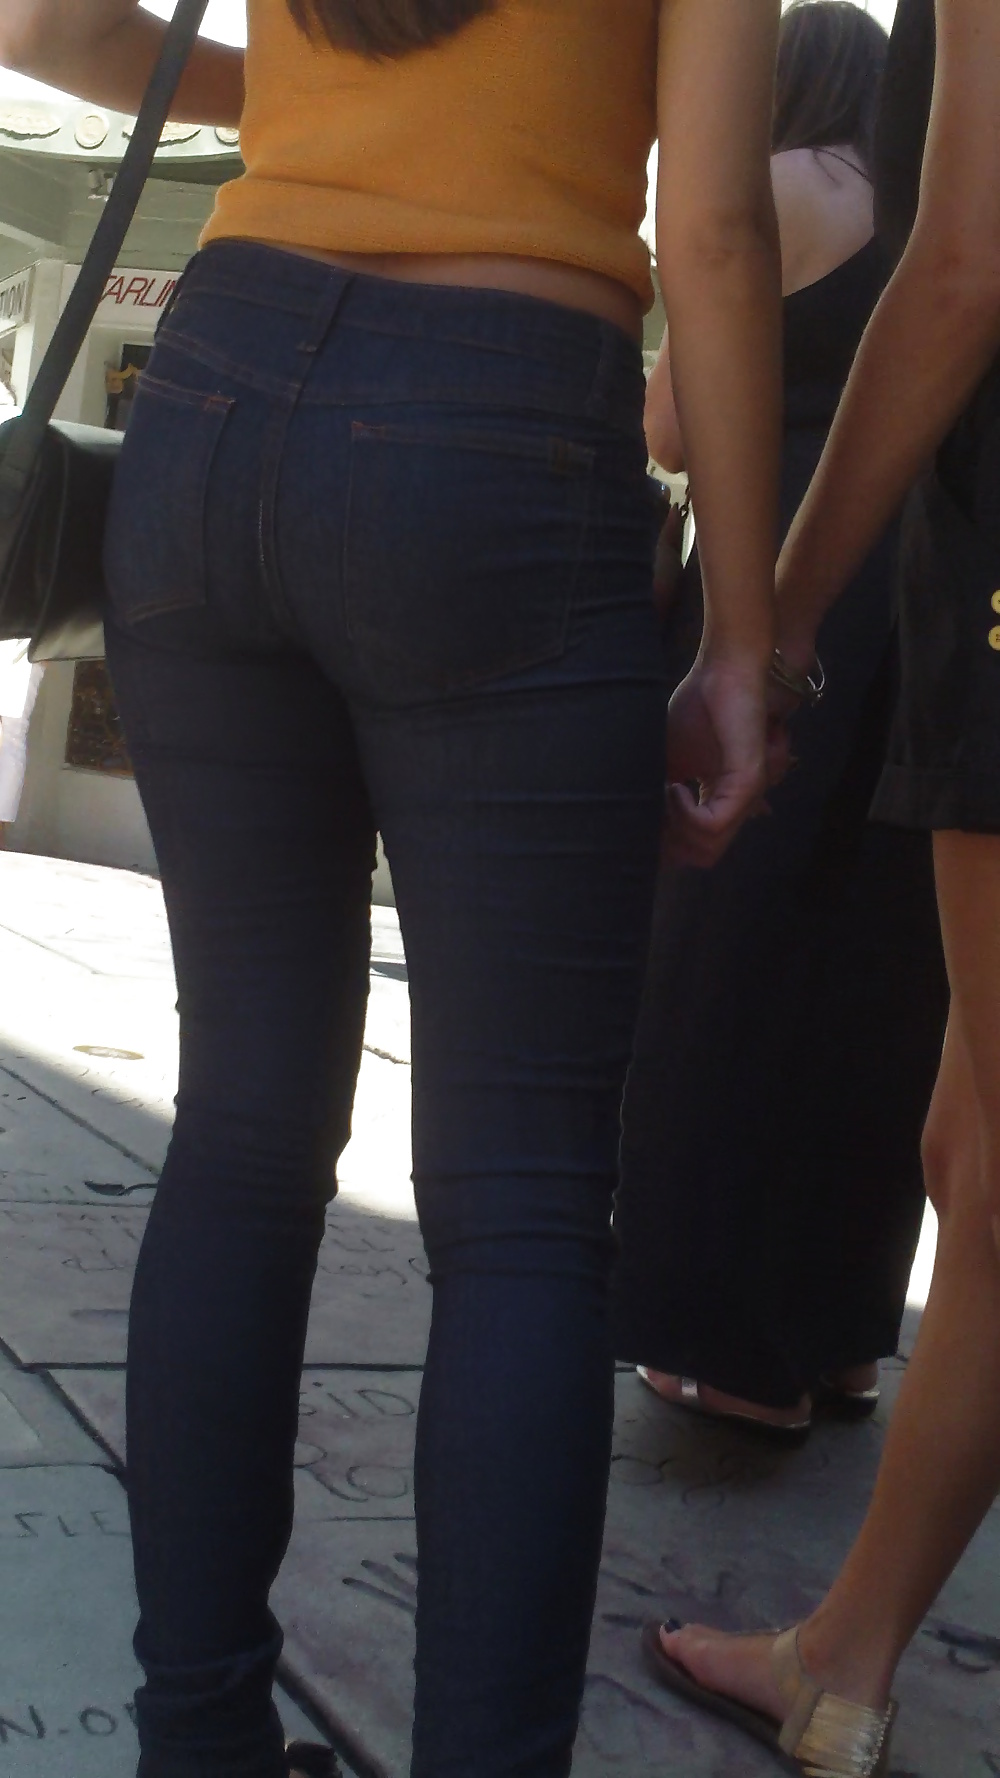 Popular teen girls ass & butt in jeans Part 5 #28732717